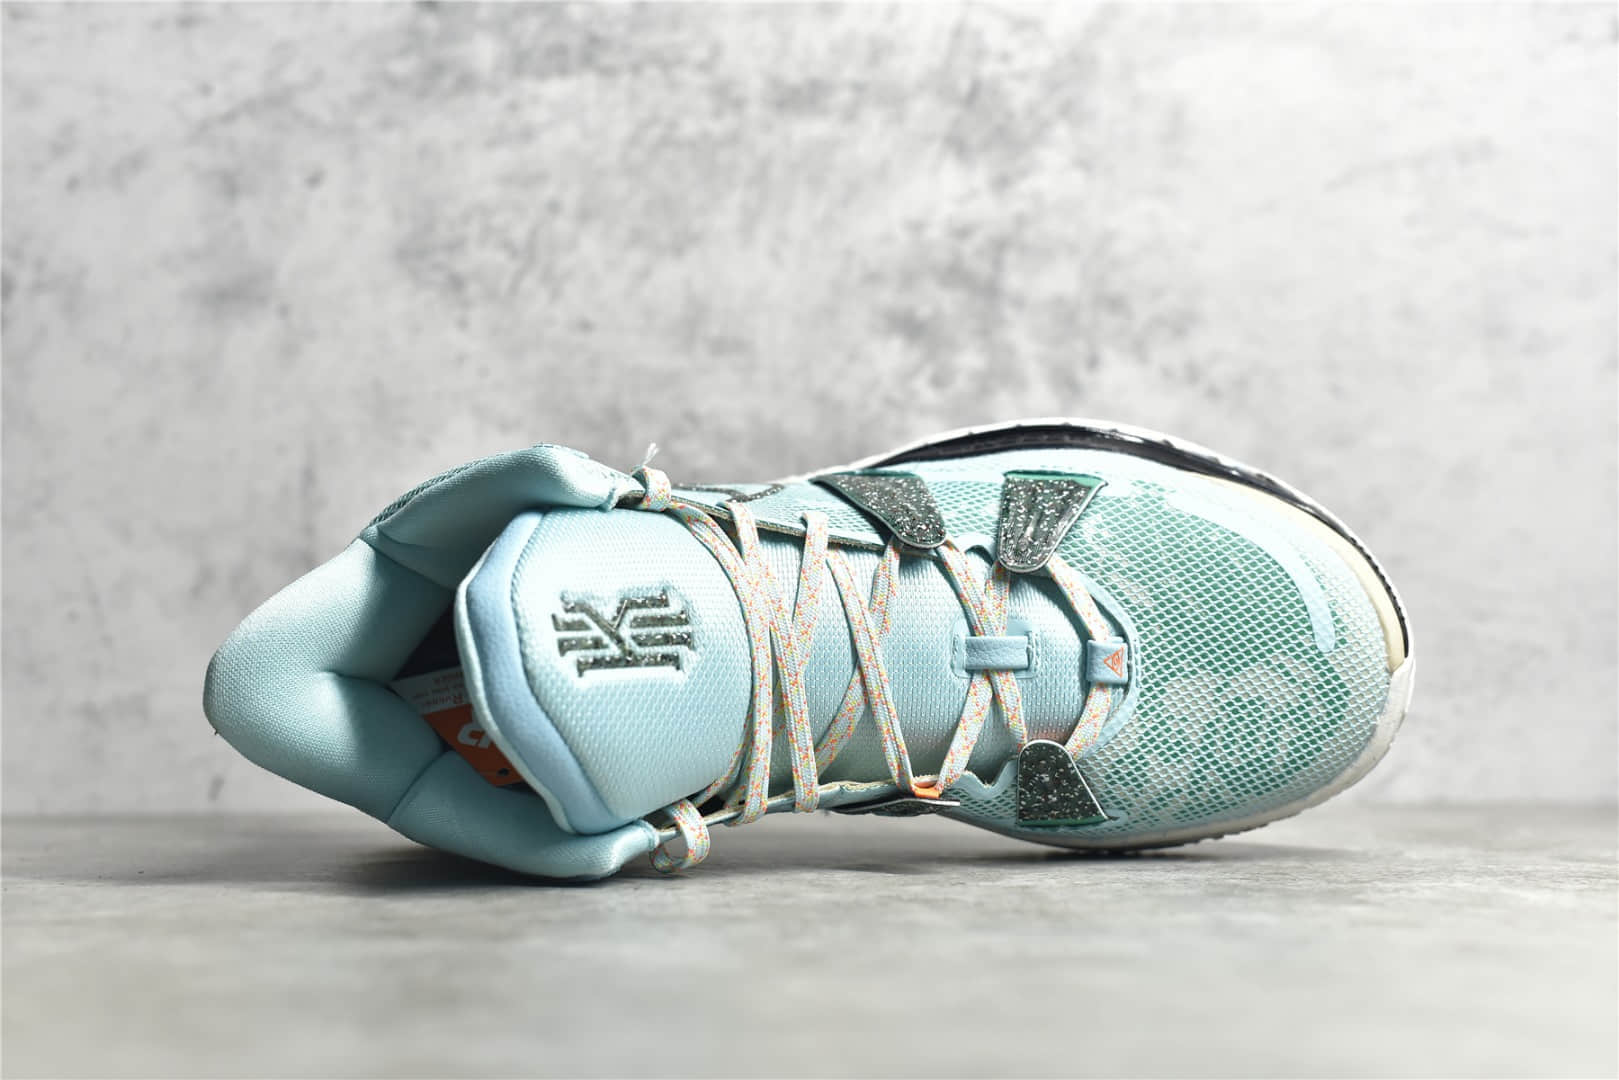 耐克欧文7代薄荷绿实战球鞋 Nike KYRIE 7 COPA 莆田耐克实战球鞋复刻 欧文7球鞋 货号：CQ9327-402-潮流者之家